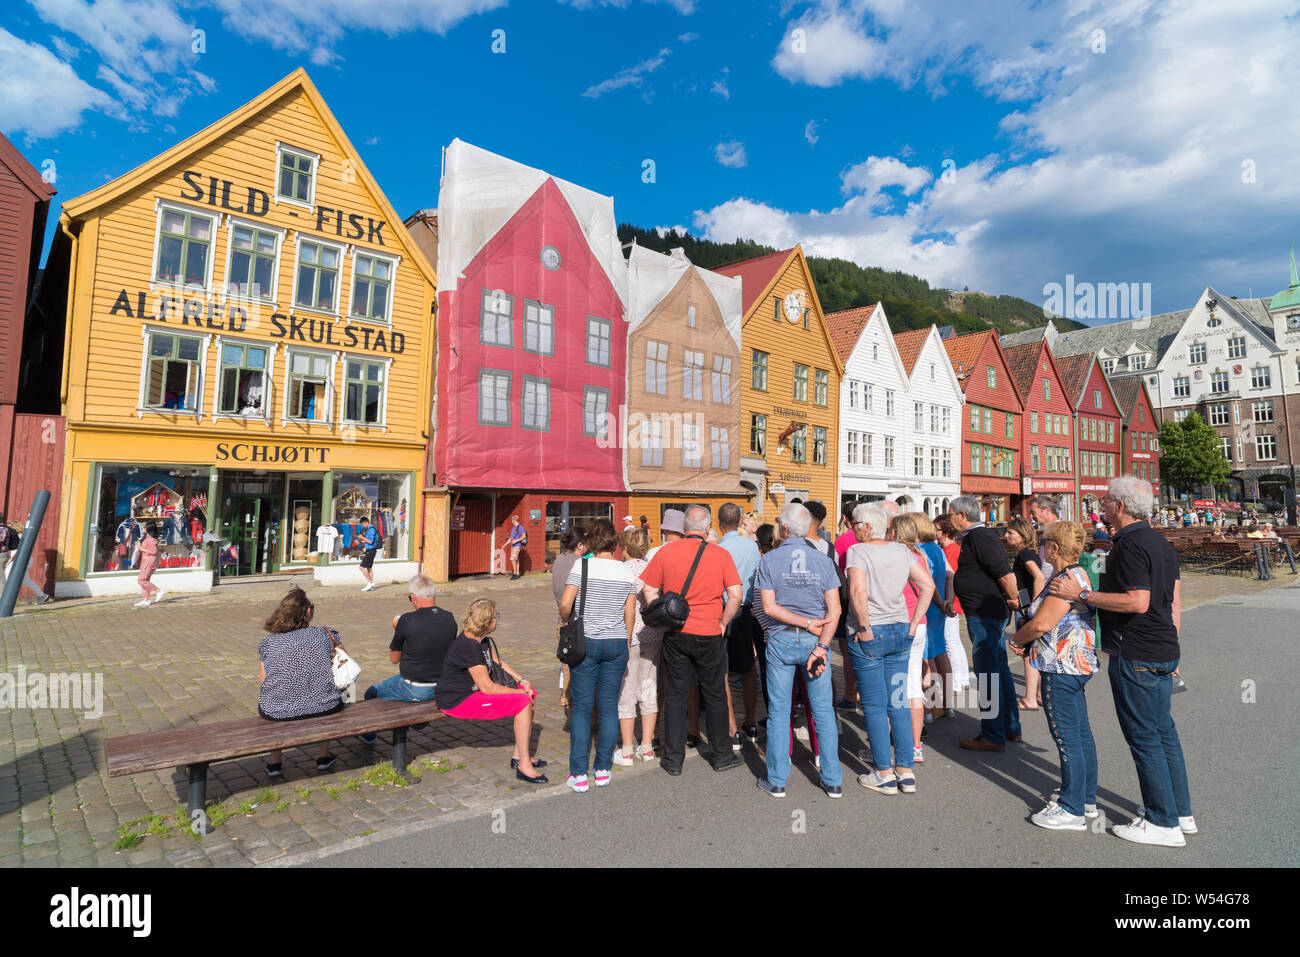 BERGEN, Norwegen - 28. JULI 2018: Touristen vor dem historischen Gebäude in Bryggen - Hanseatic Wharf. Bryggen wurde auf der UNESCO-Herita Stockfoto